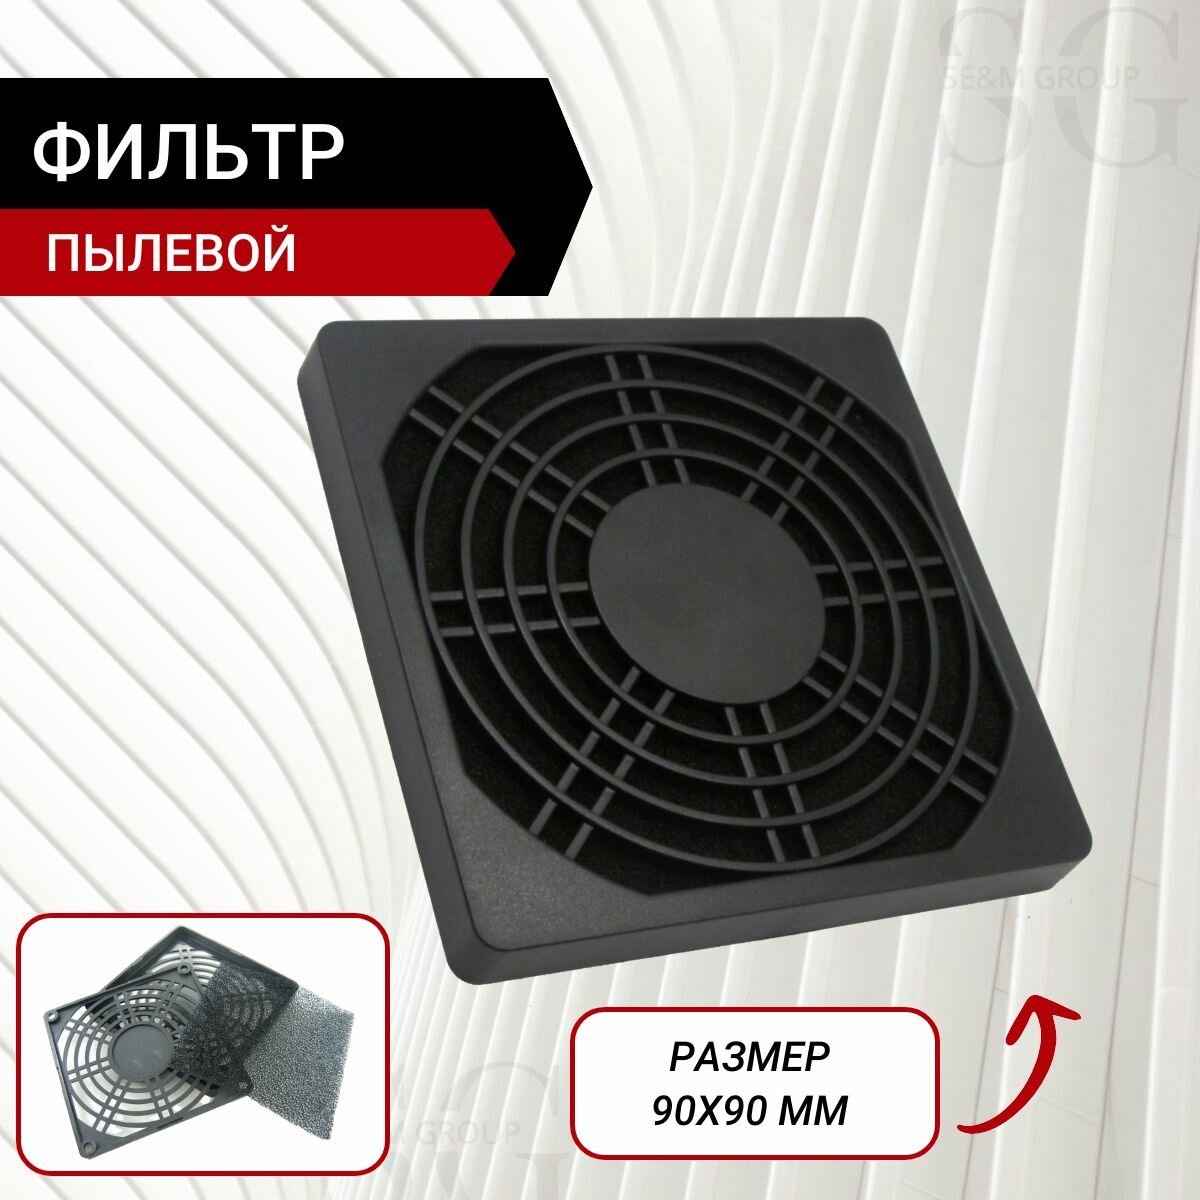 Пылевой фильтр для вентилятора 90х90 мм